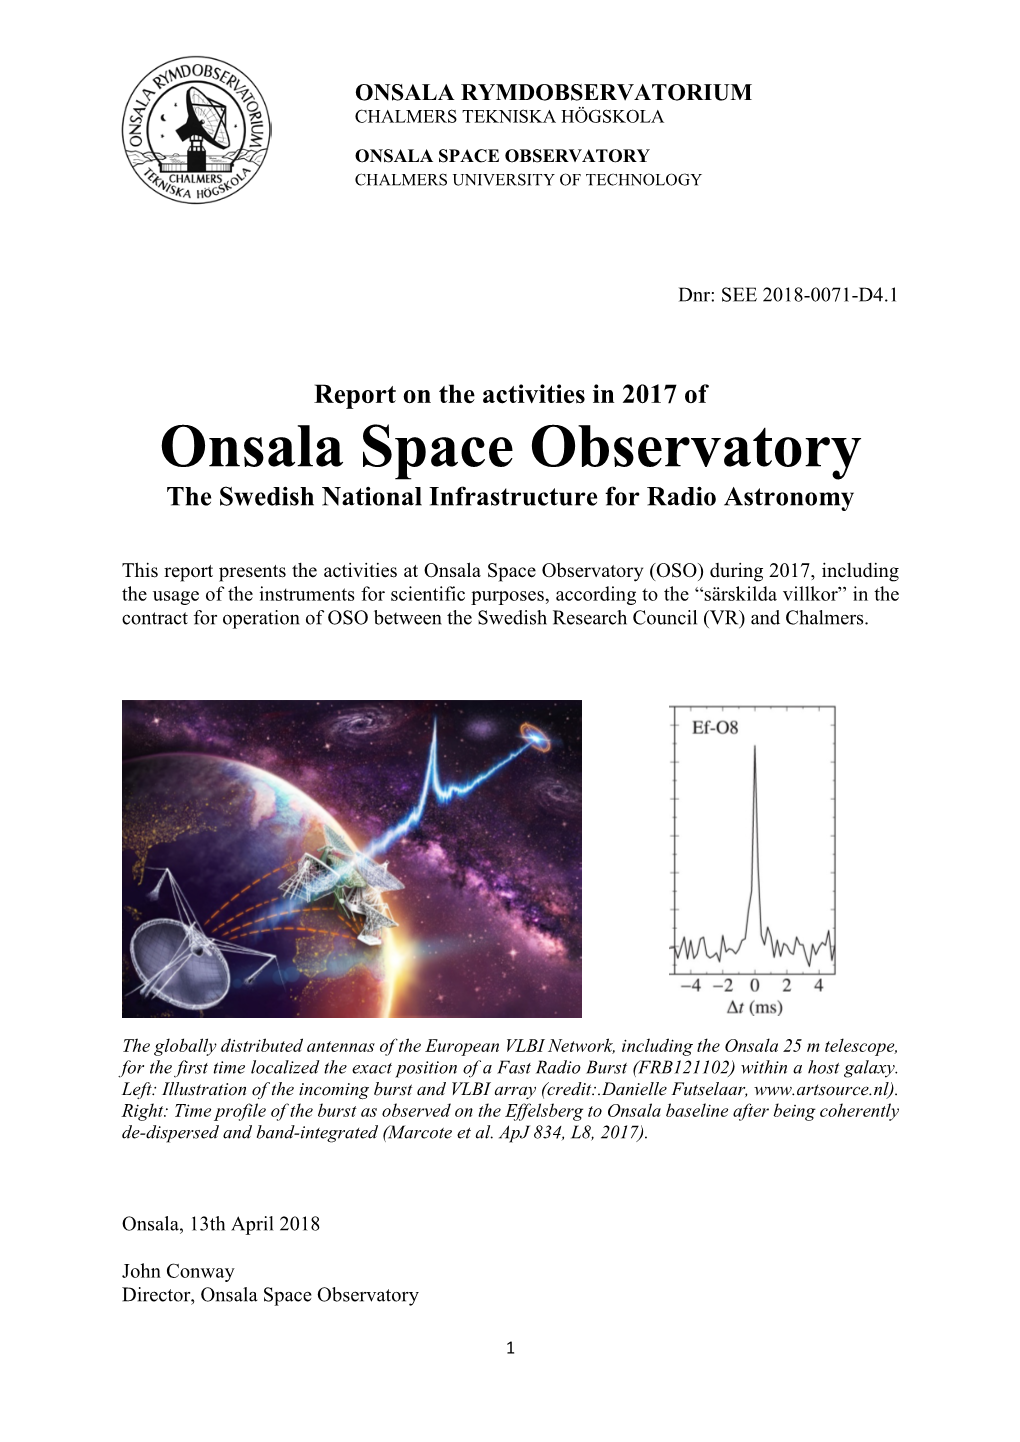 Onsala Space Observatory Chalmers University of Technology